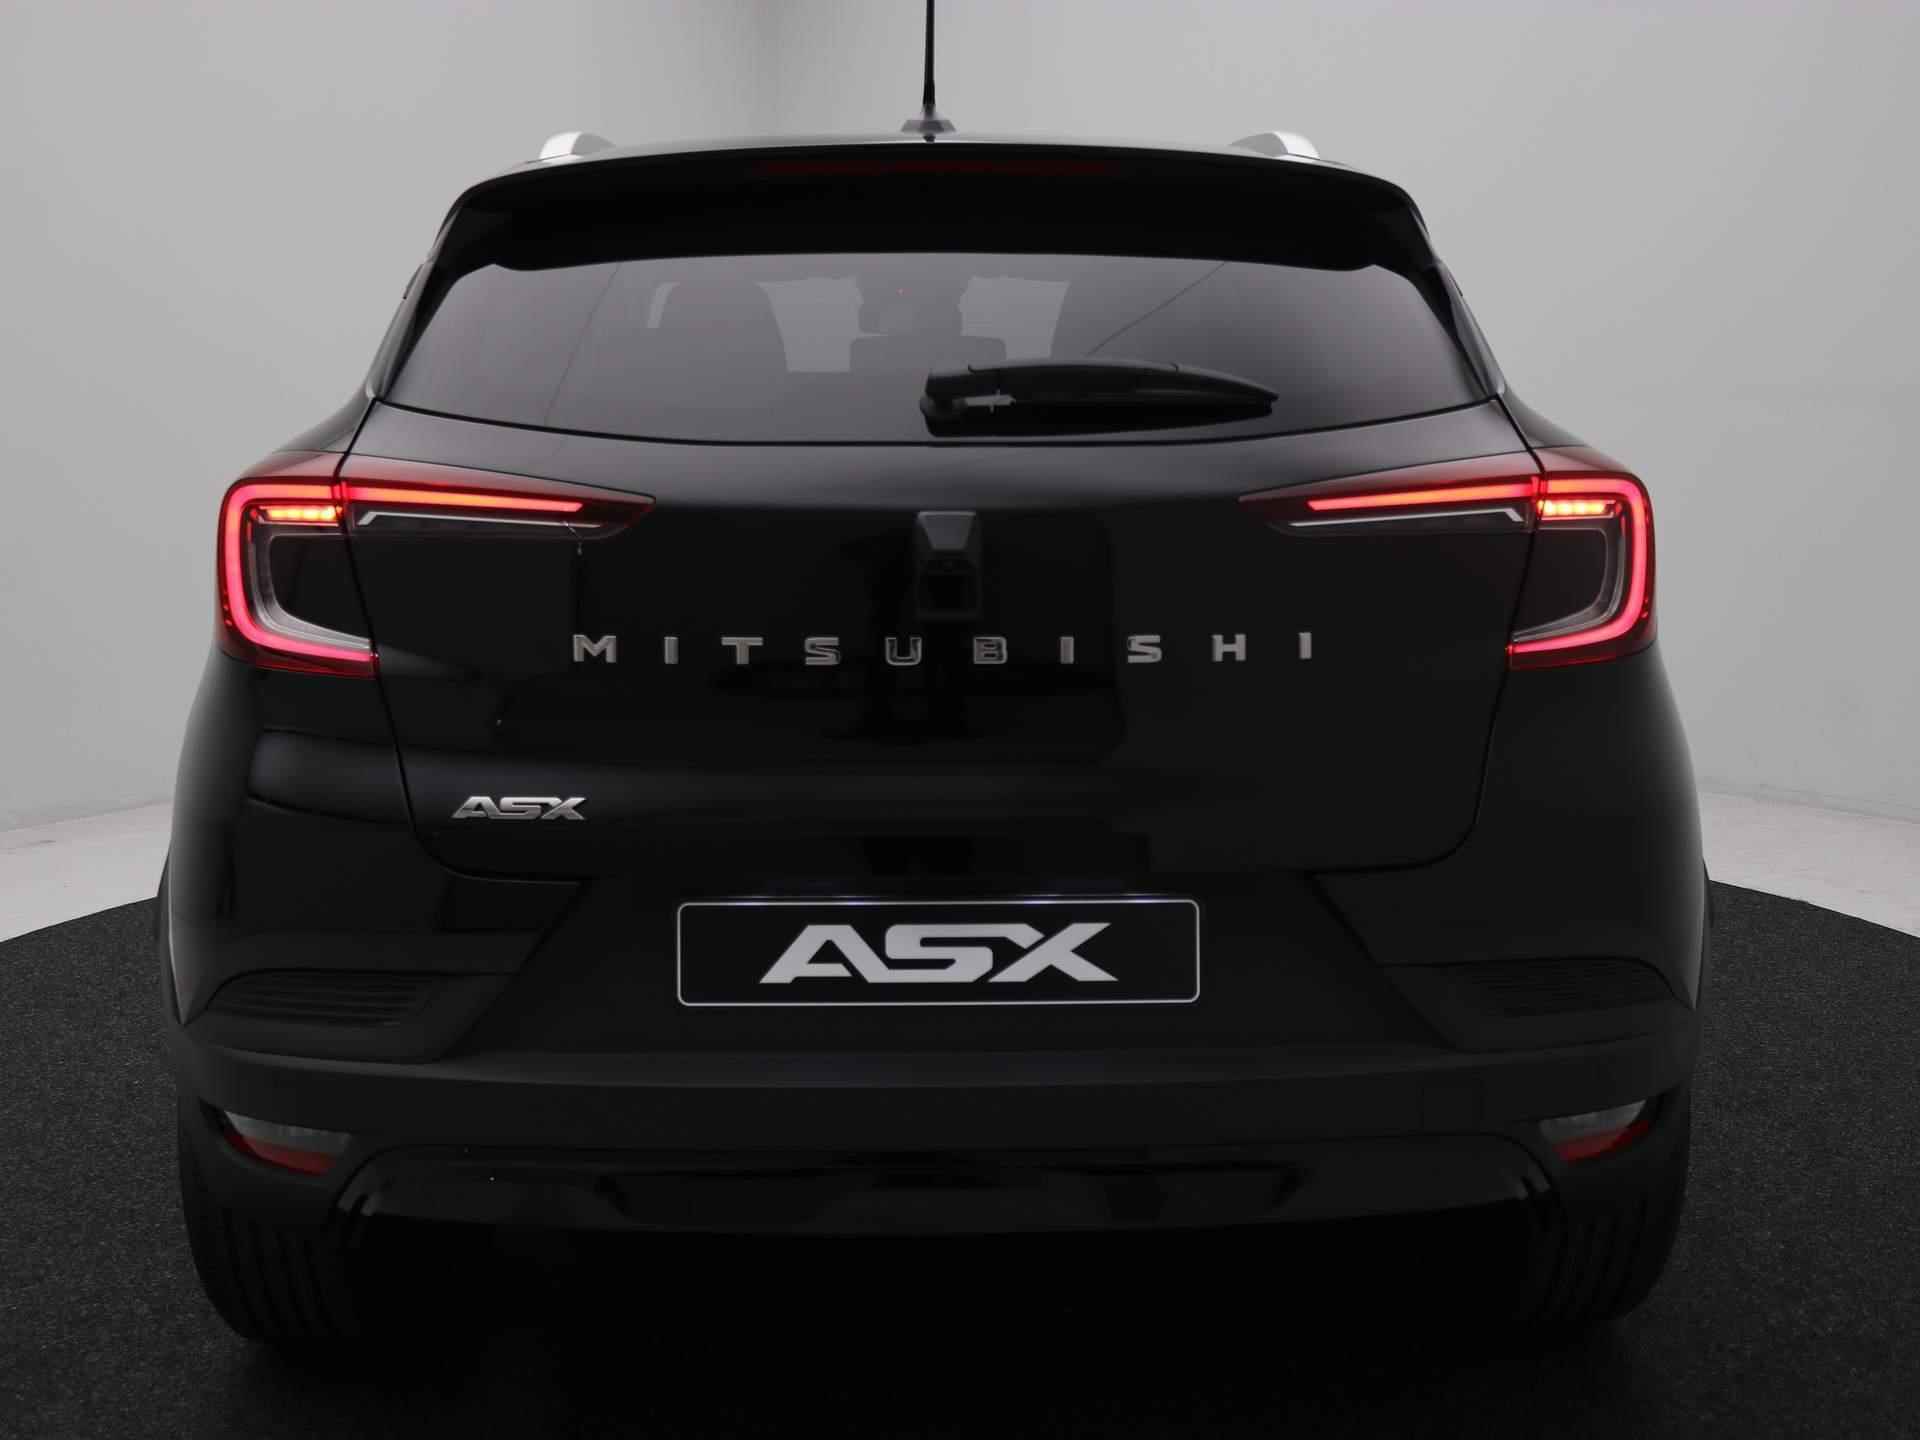 Mitsubishi ASX 1.0 MPI Turbo Intense / Korting € 5.750,- / Rijklaarprijs € 25.870,- / Direct leverbaar / Android Auto & Apple Carplay / Achteruitrijcamera / Cruise Control / Parkeersensoren voor & achter / Climate Control / - 23/65